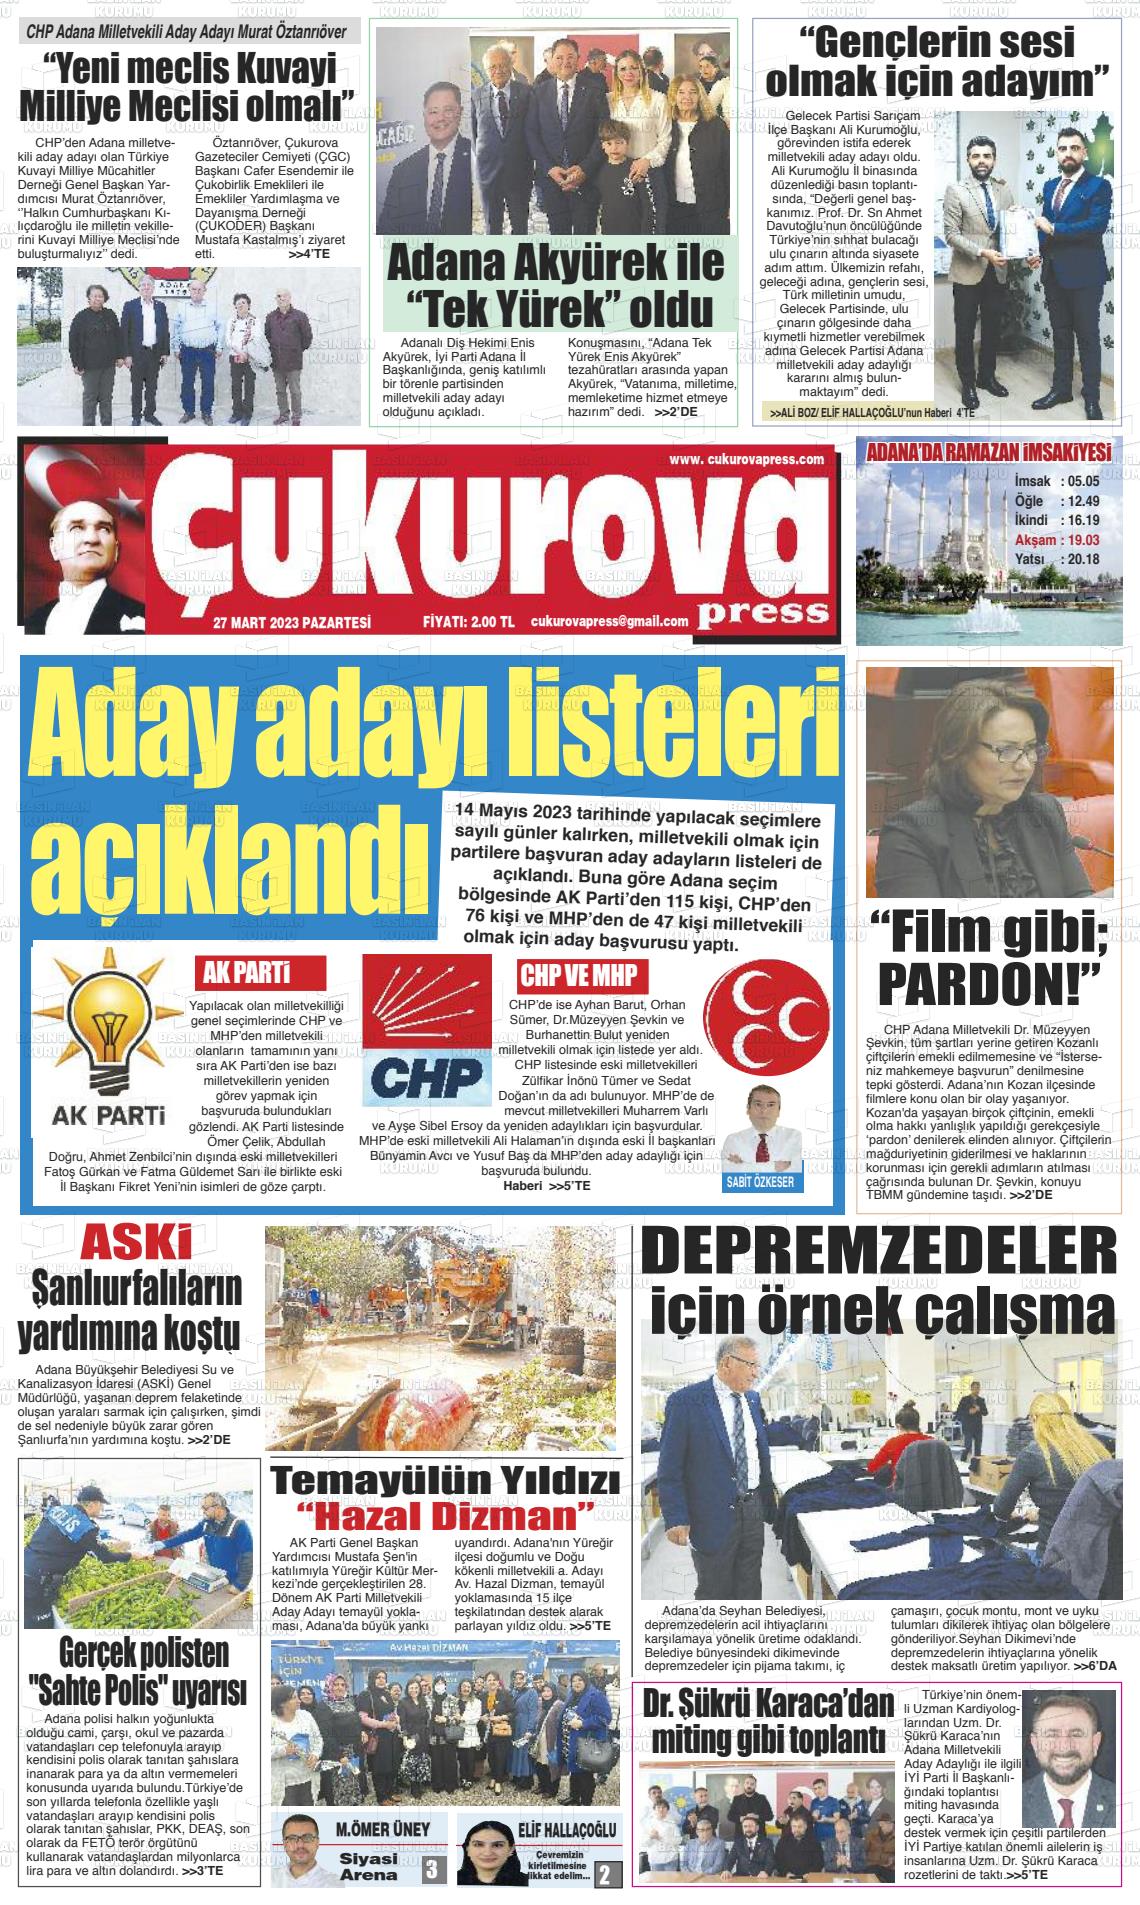 27 Mart 2023 Çukurova Press Gazete Manşeti